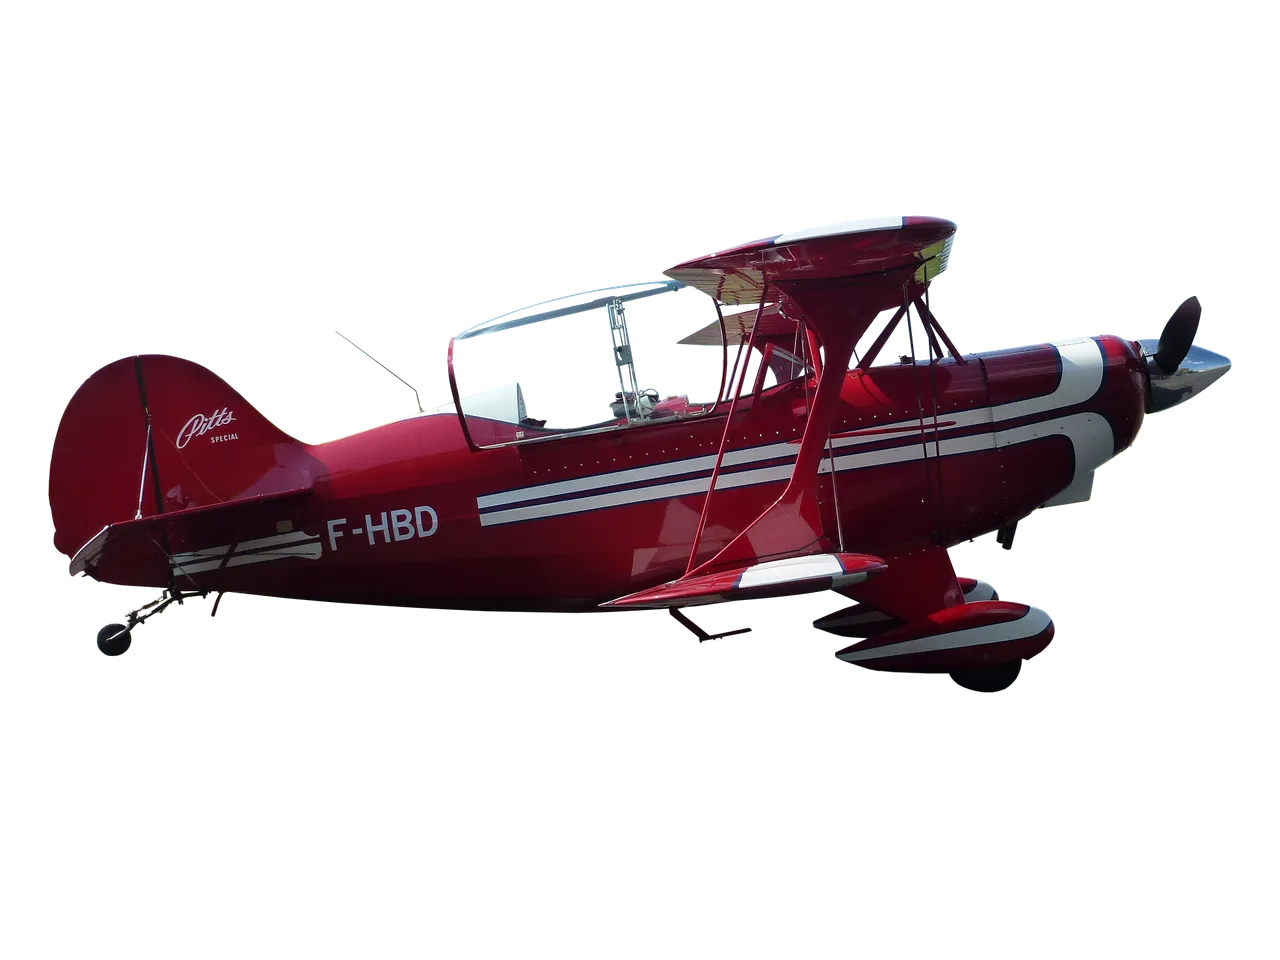 aerobatic-5295836_1920.png